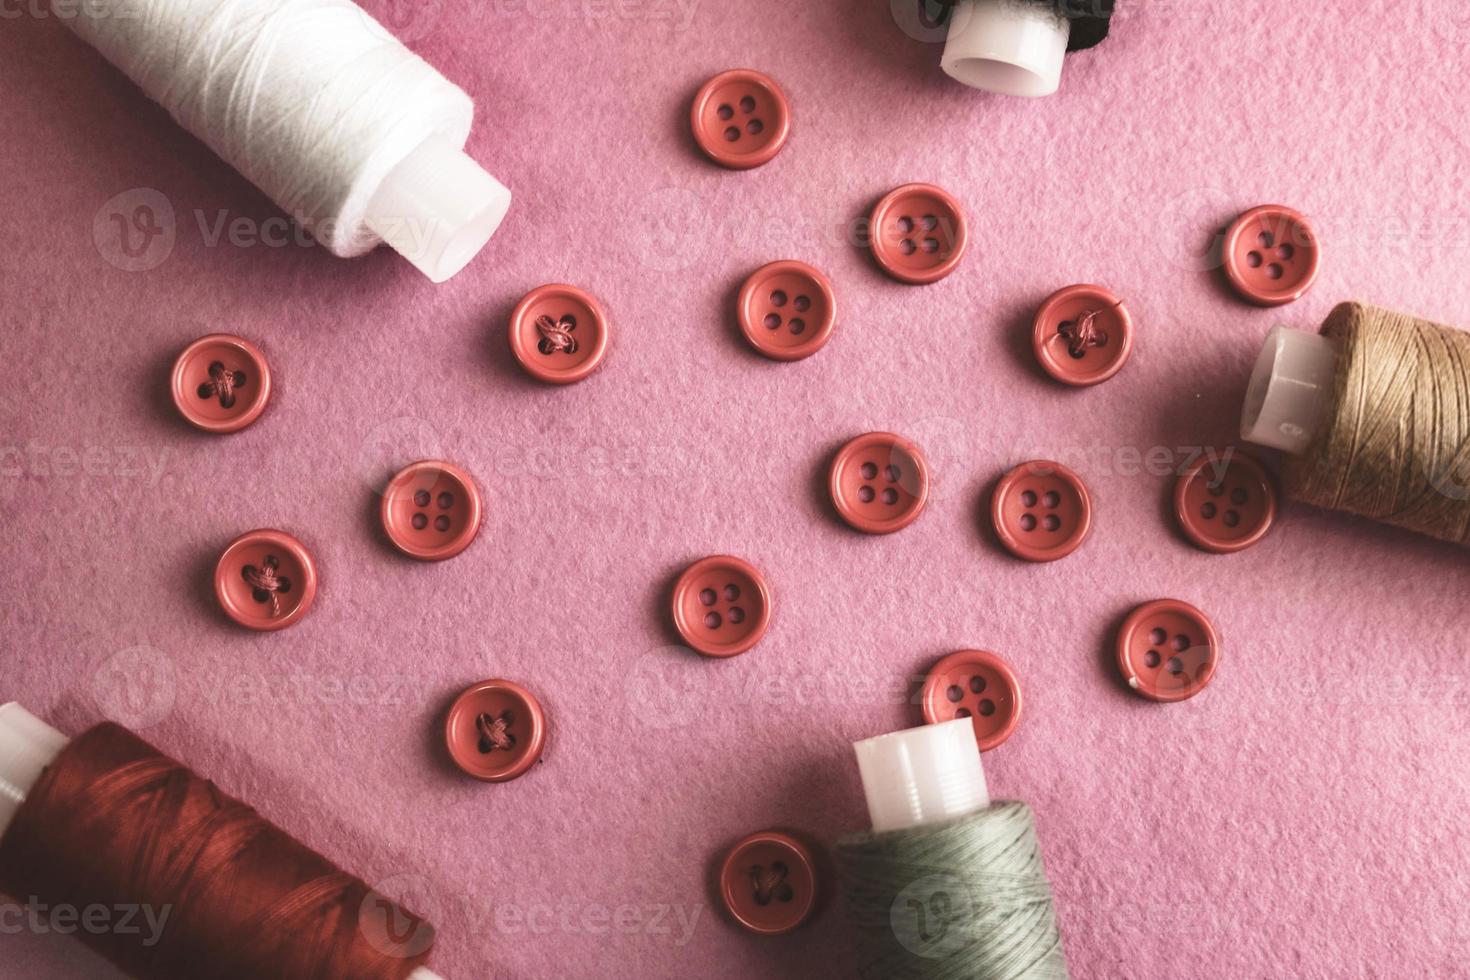 beau cadre avec beaucoup de boutons rouges ronds pour la couture, la couture et les écheveaux de bobines de fil. espace de copie. mise à plat. fond rose violet photo